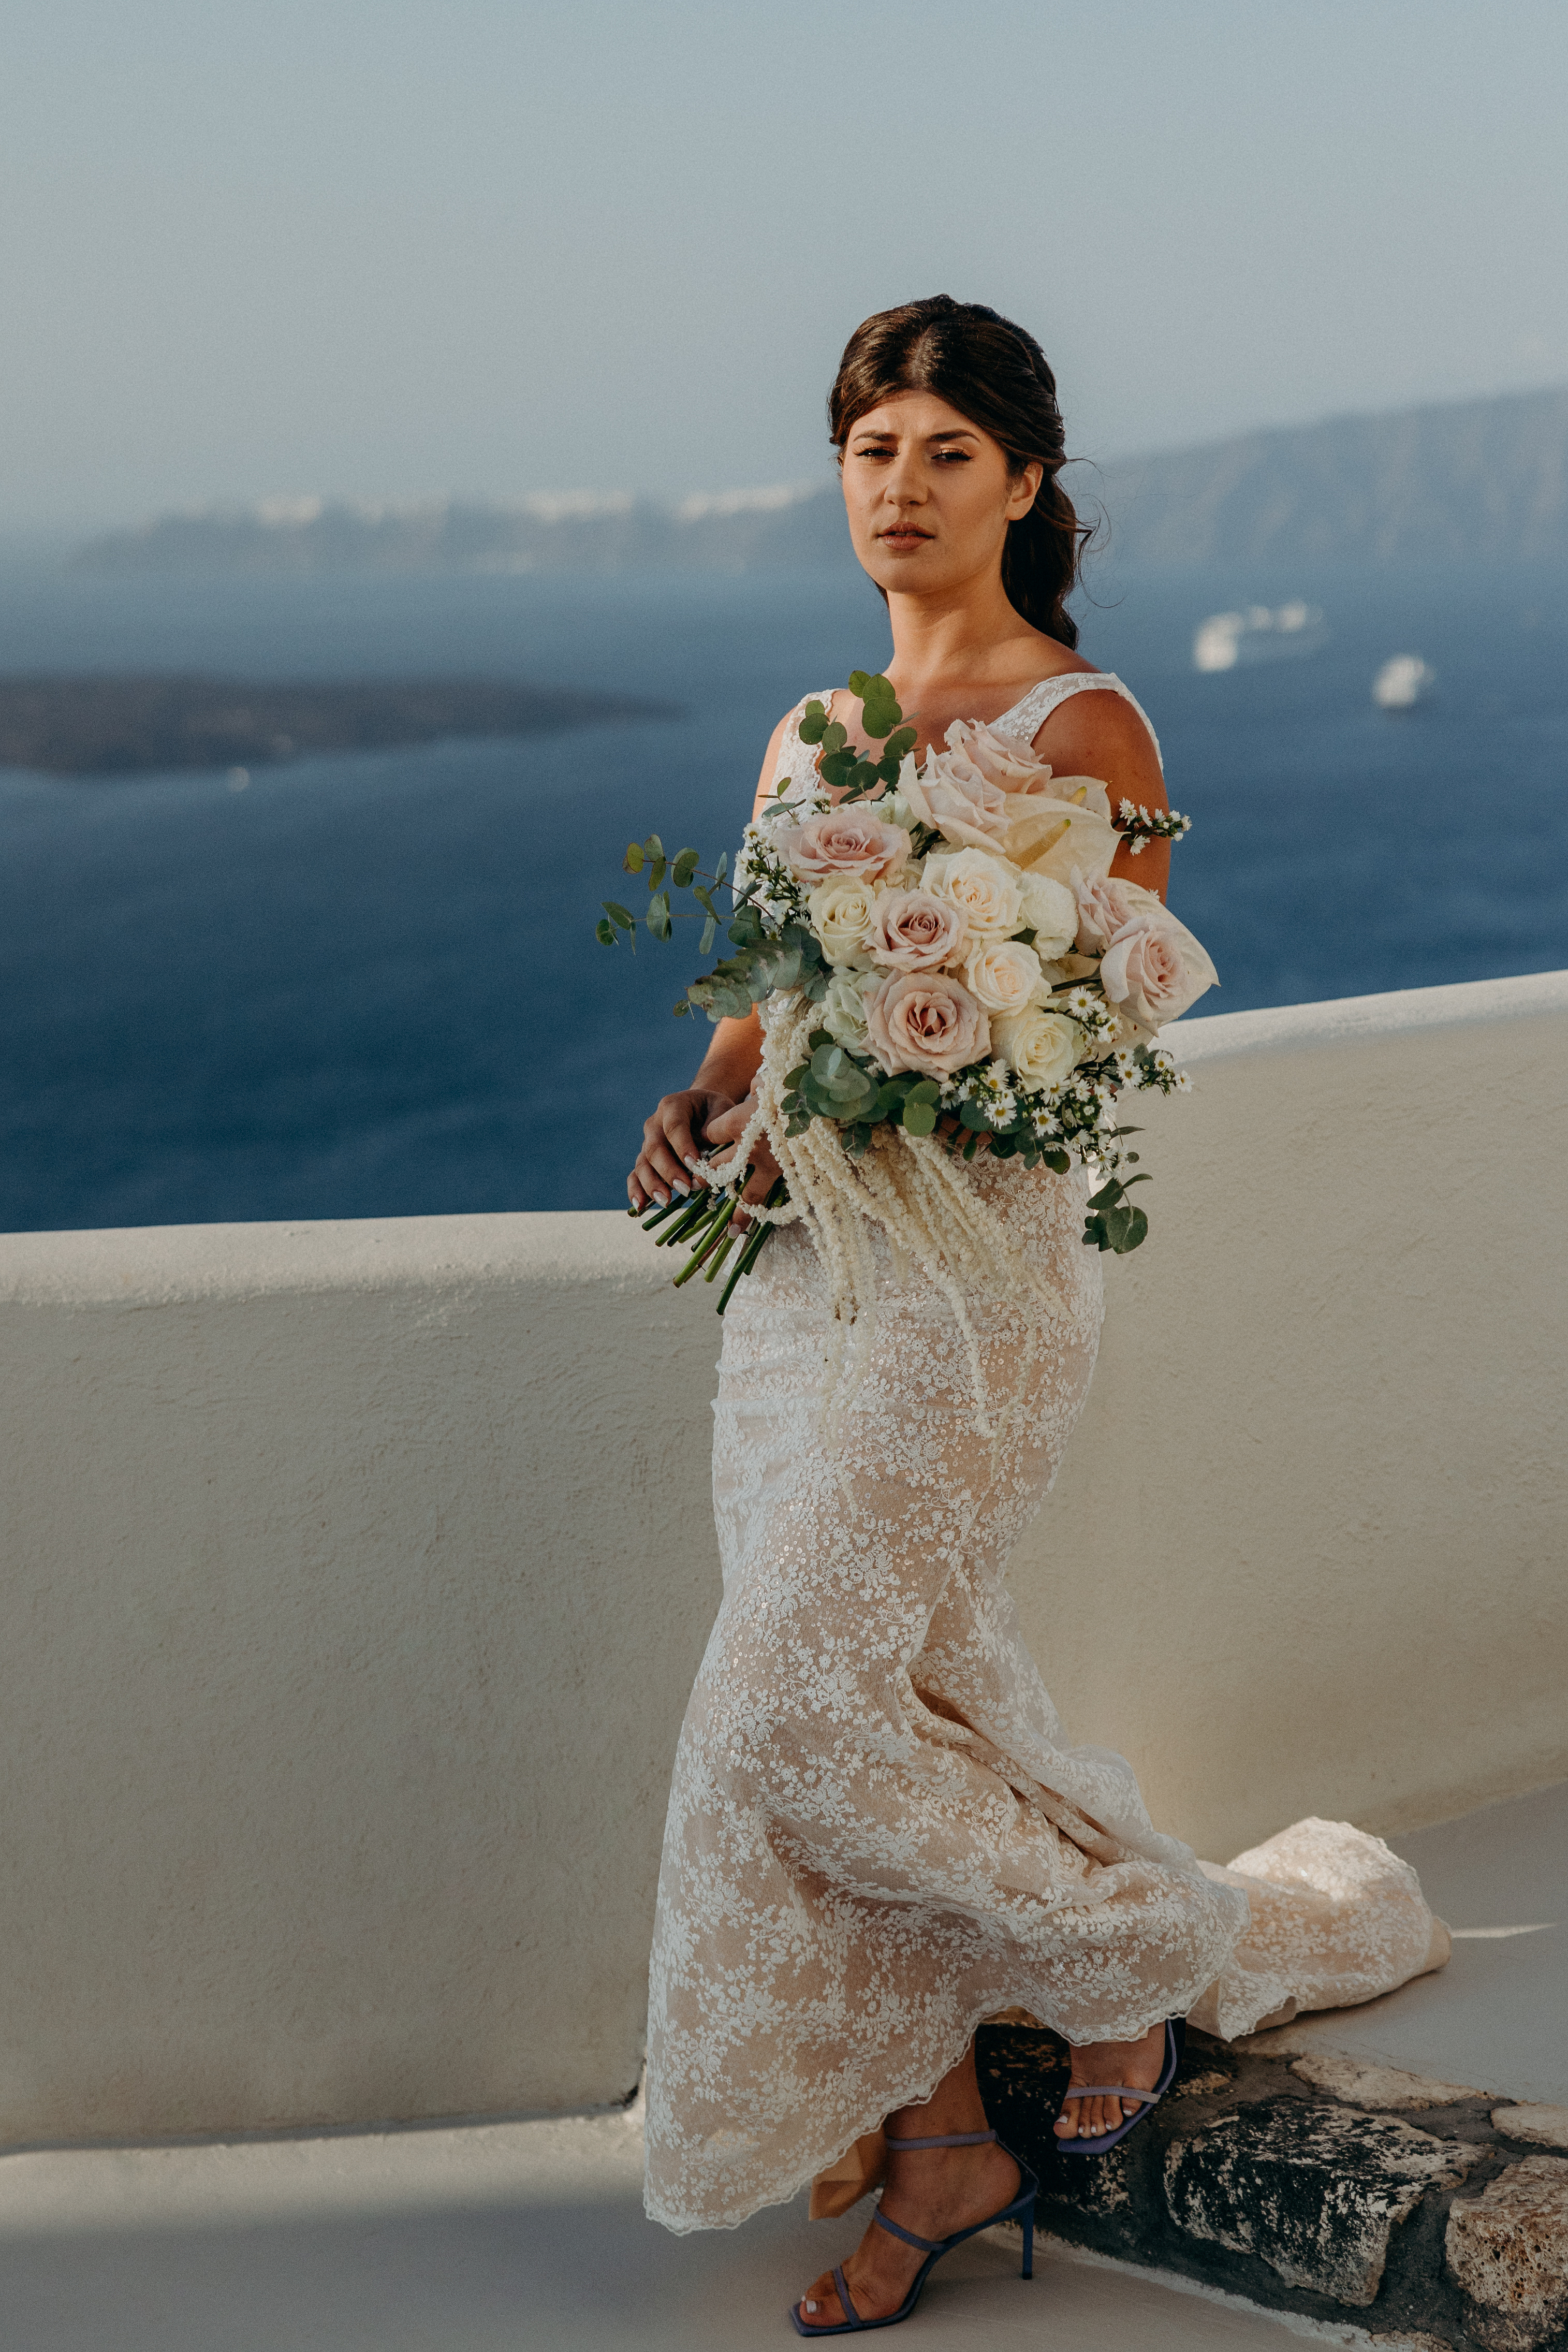 Die Braut trägt ein bodenlanges Kleid und einen Blumenstrauß mit pastellfarbenen Rosen.